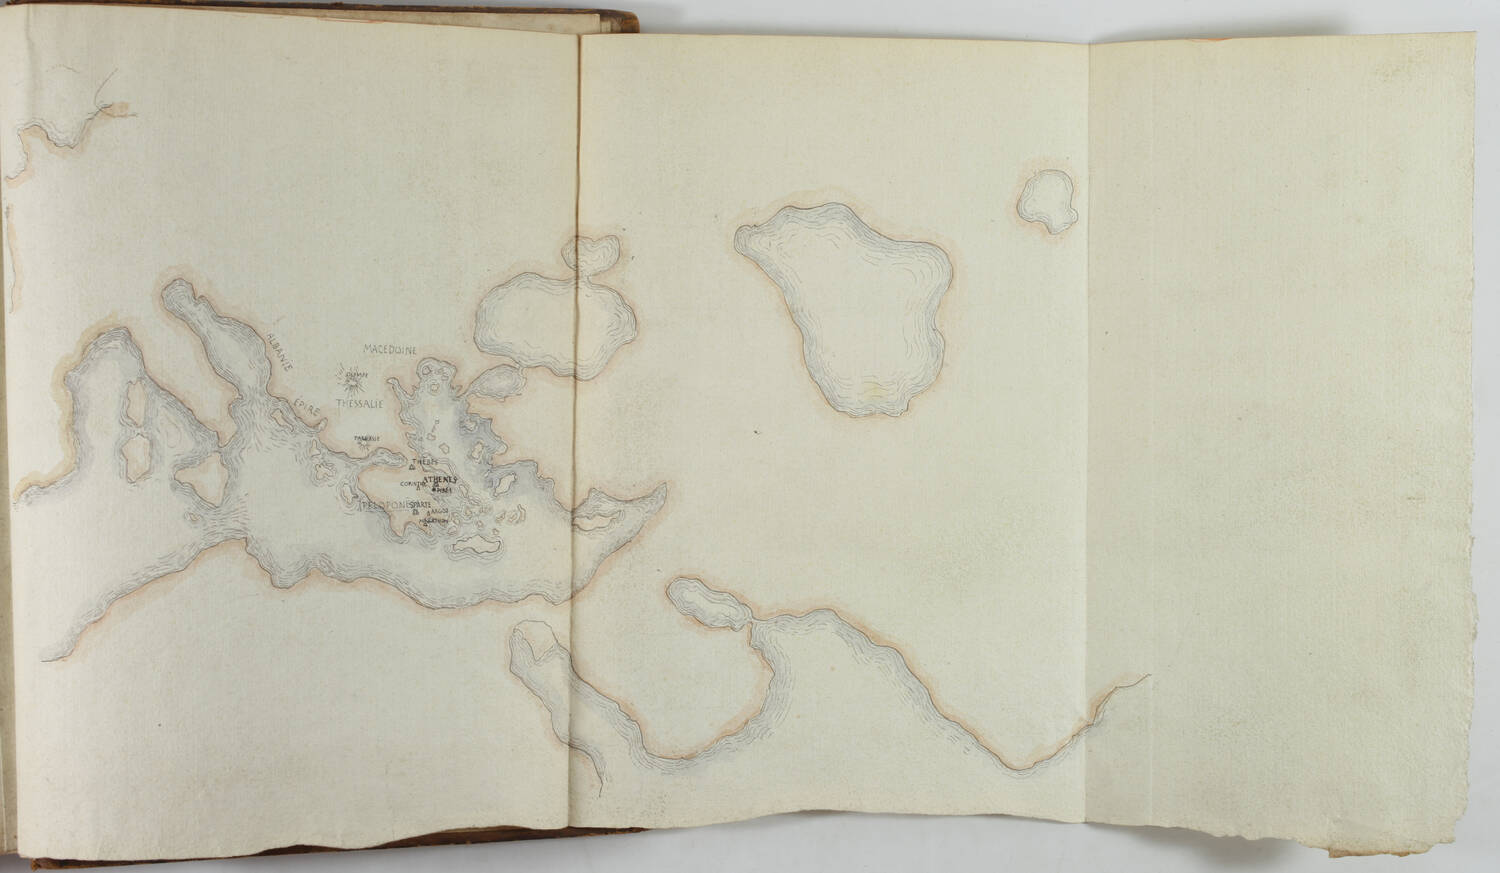 LABORDE - Chronologie de 80 peuples de l antiquité - 1788 - Carte manuscrite - Photo 0, livre ancien du XVIIIe siècle